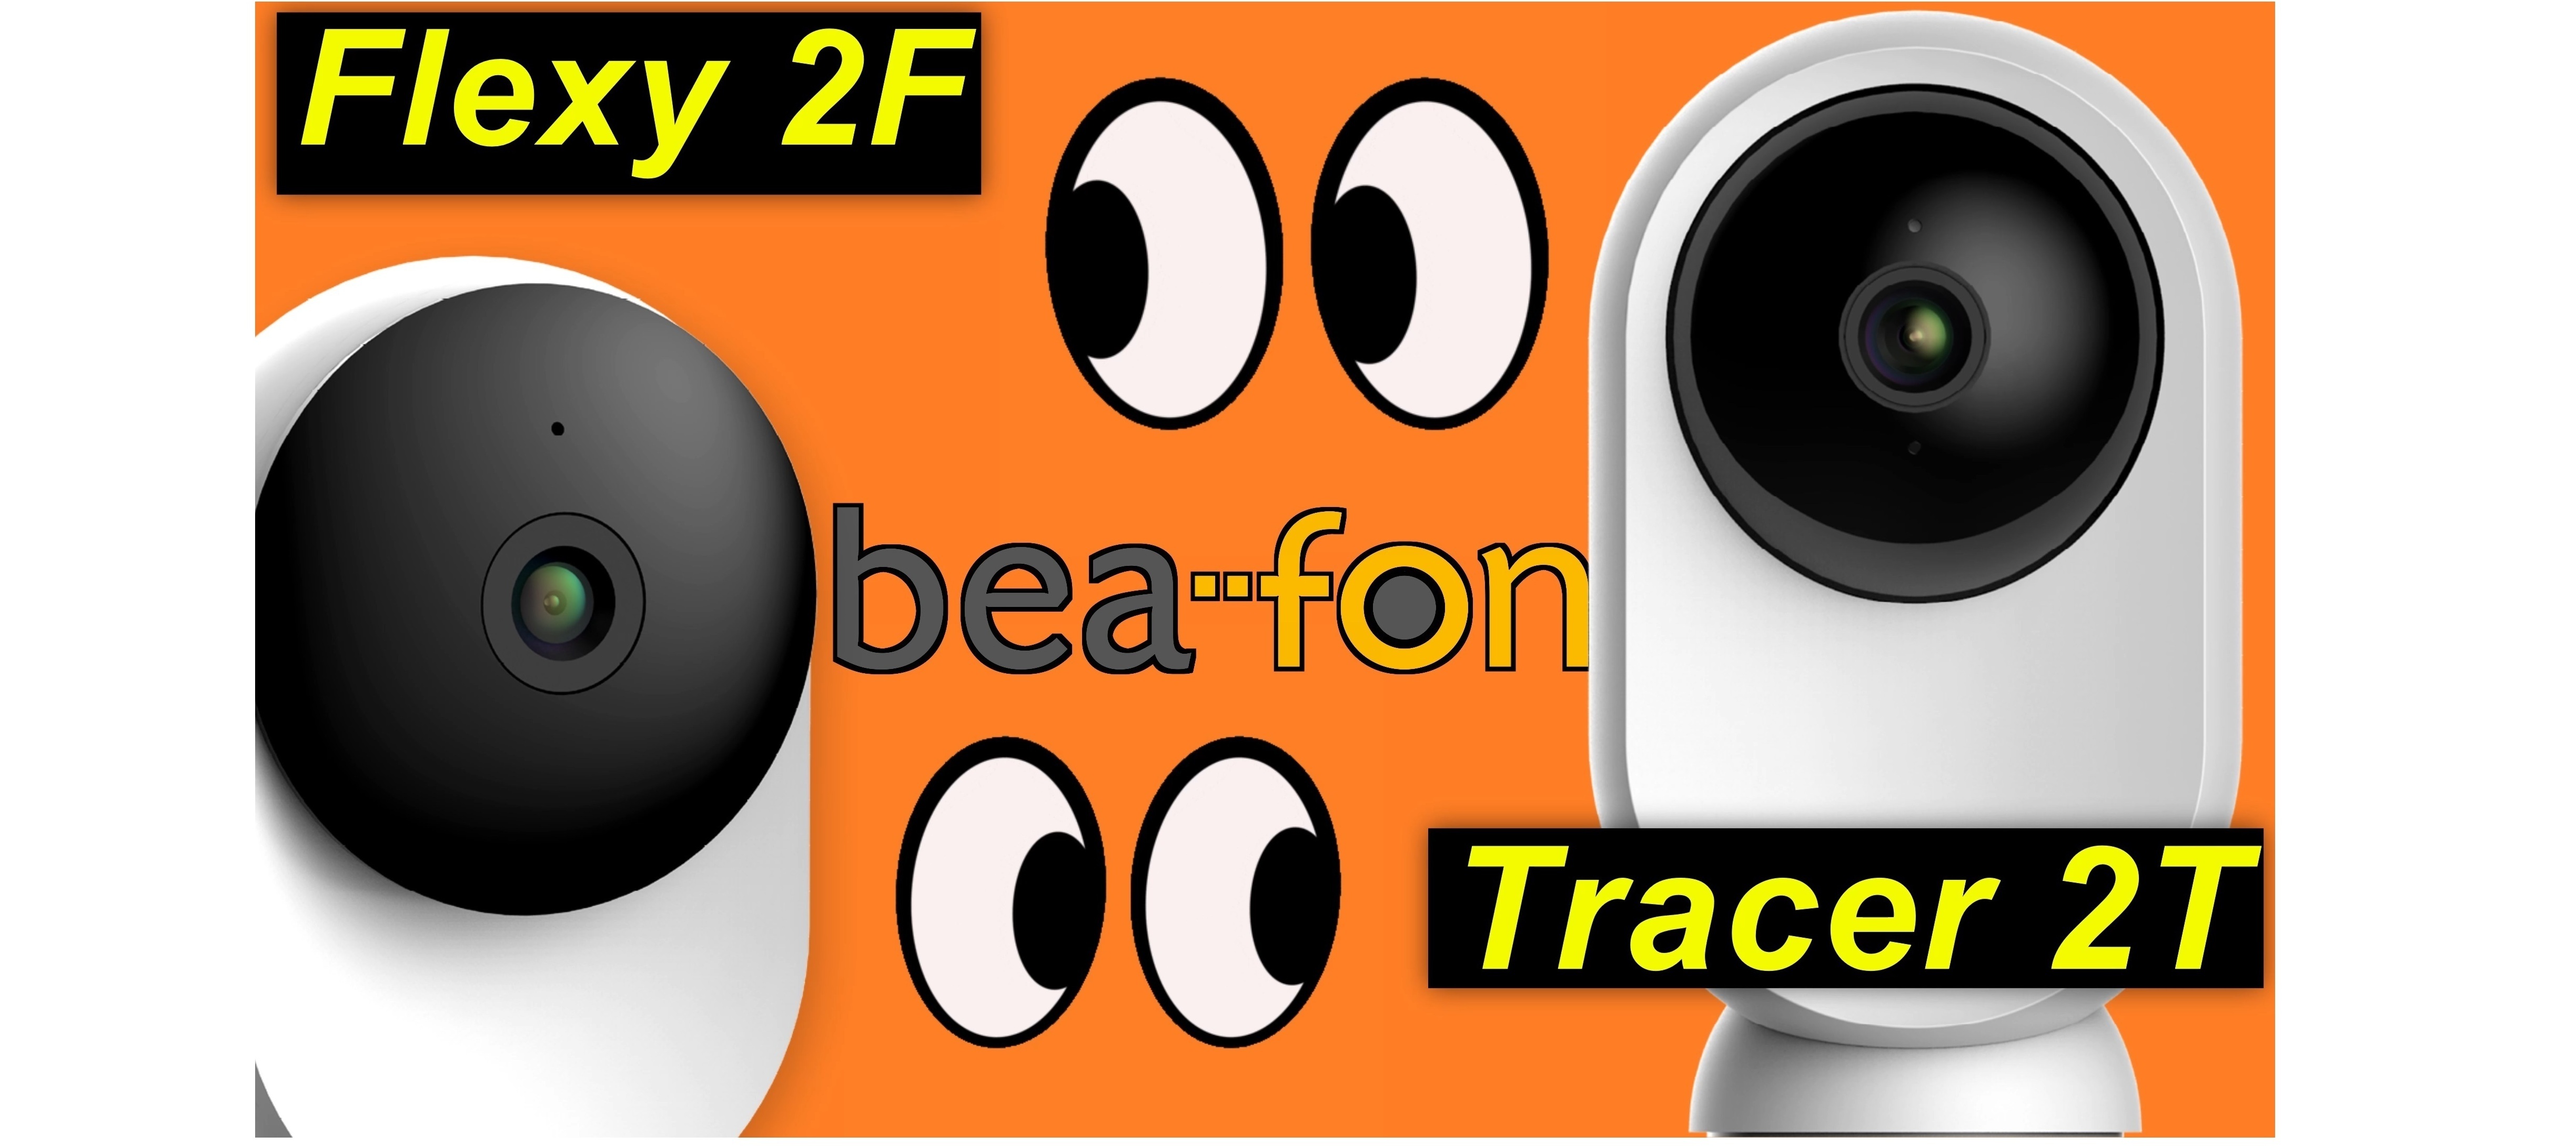 Beafon Flexy 2F + Tracer 2T - meine Augen überall | SeppelPower